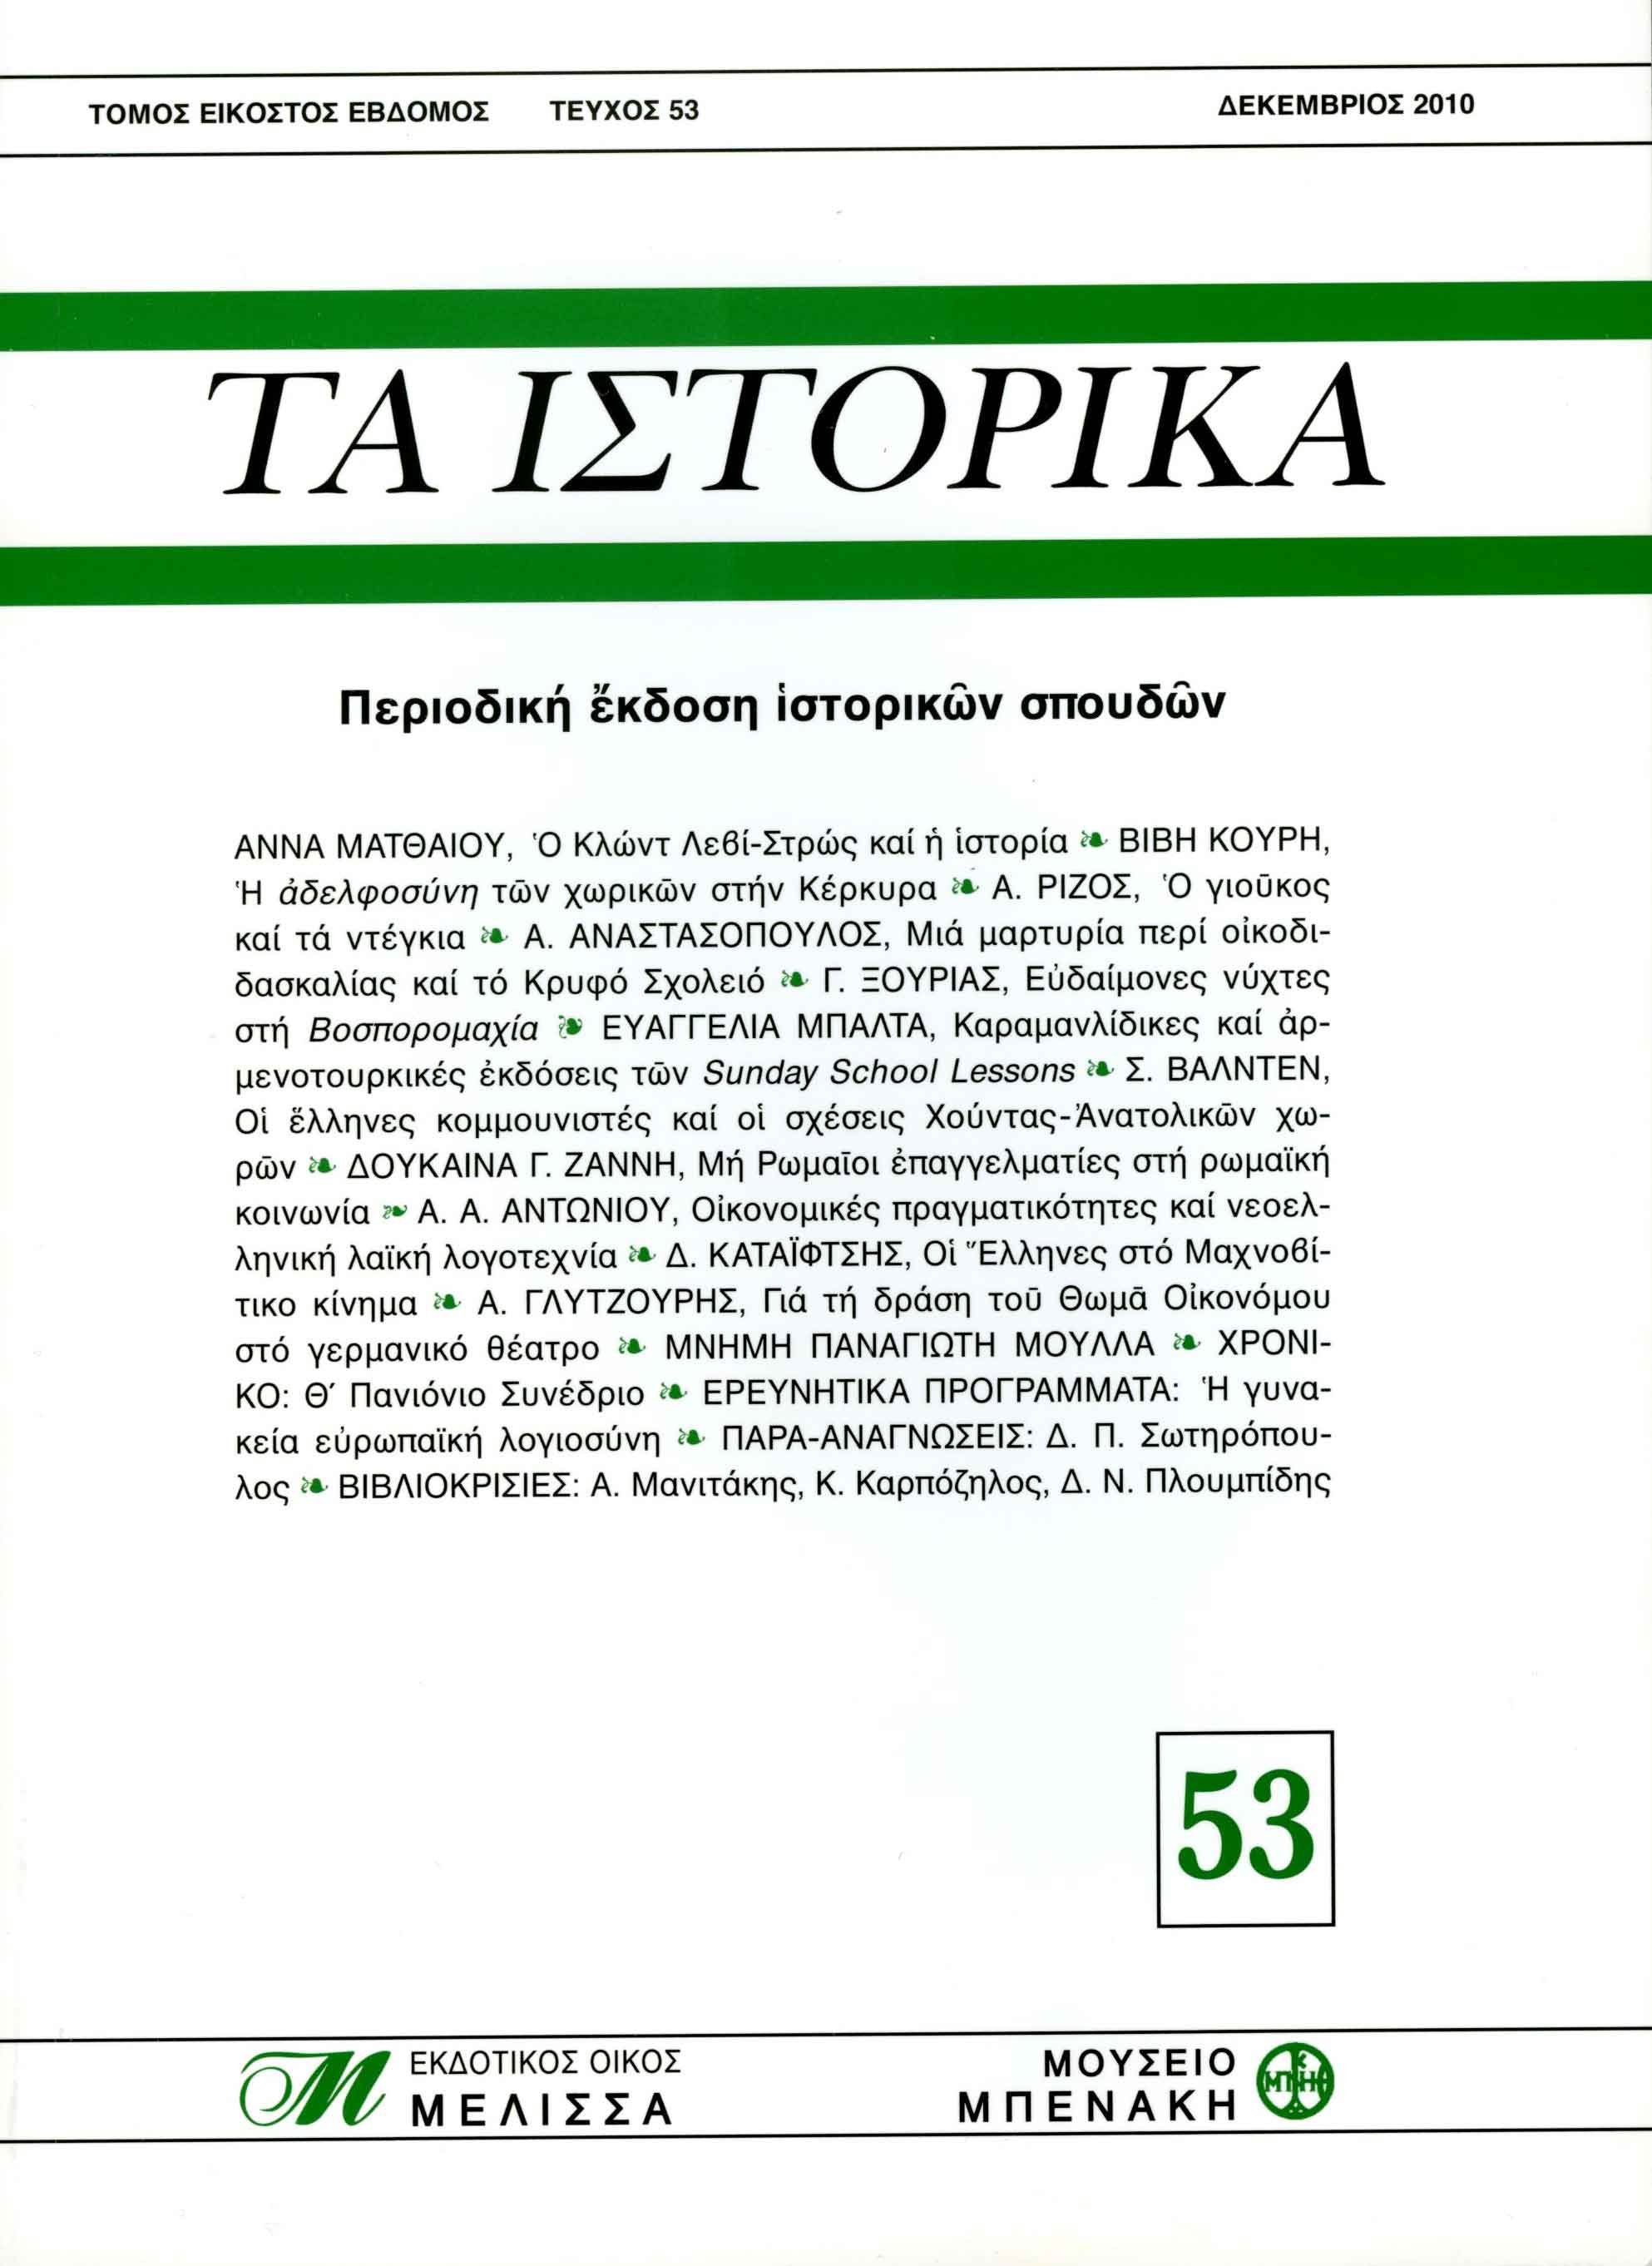 ΤΑ ΙΣΤΟΡΙΚΑ, τεύχος 53 (TA ISTORIKA, issue 53)